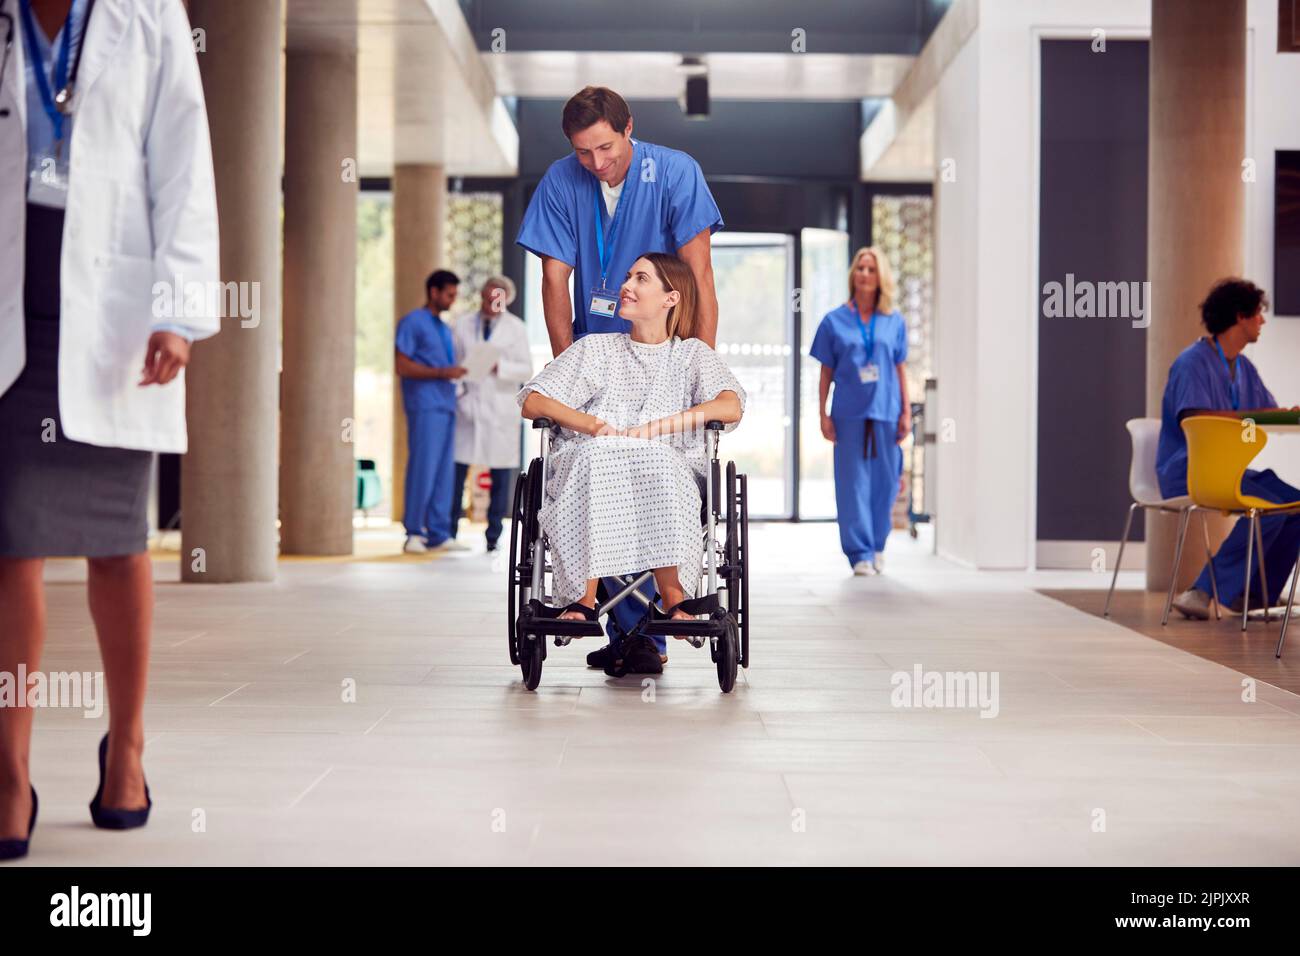 ospedale, paziente, sedia a rotelle, infermiere, clinica, ospedali, centri medici, pazienti, carrozzine, infermieri Foto Stock